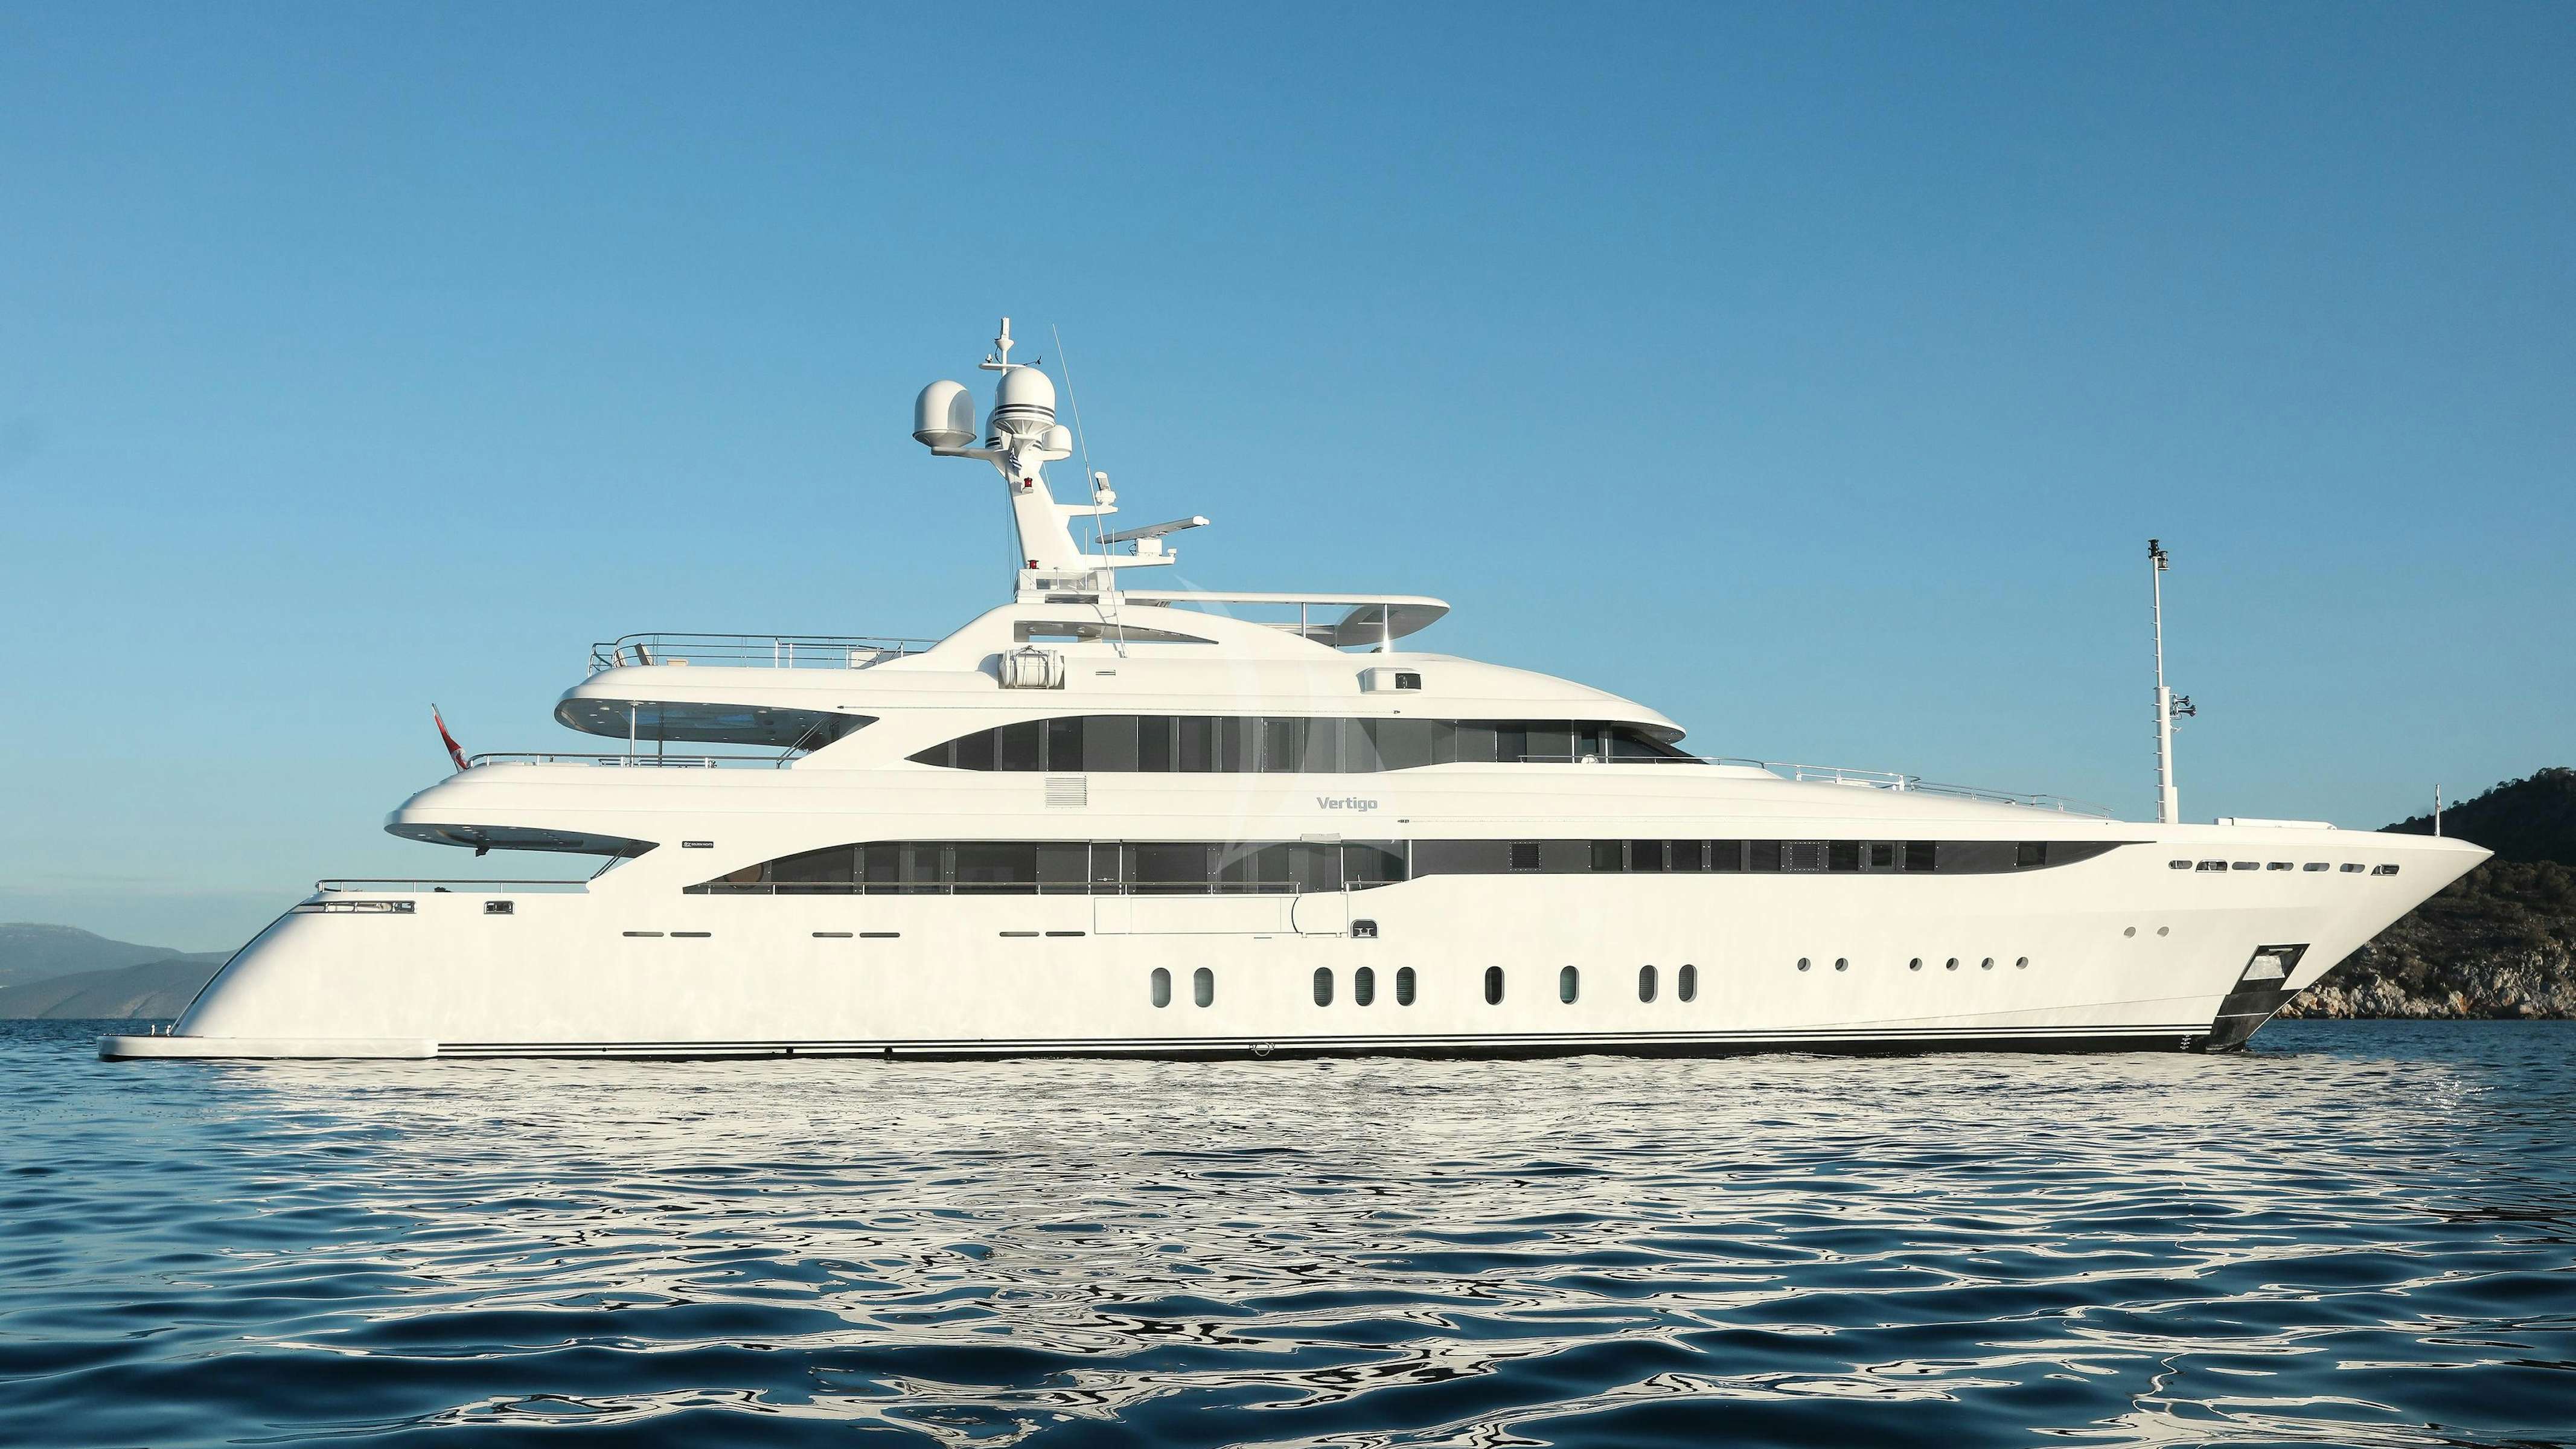 Watch Video for VERTIGO Yacht for Charter